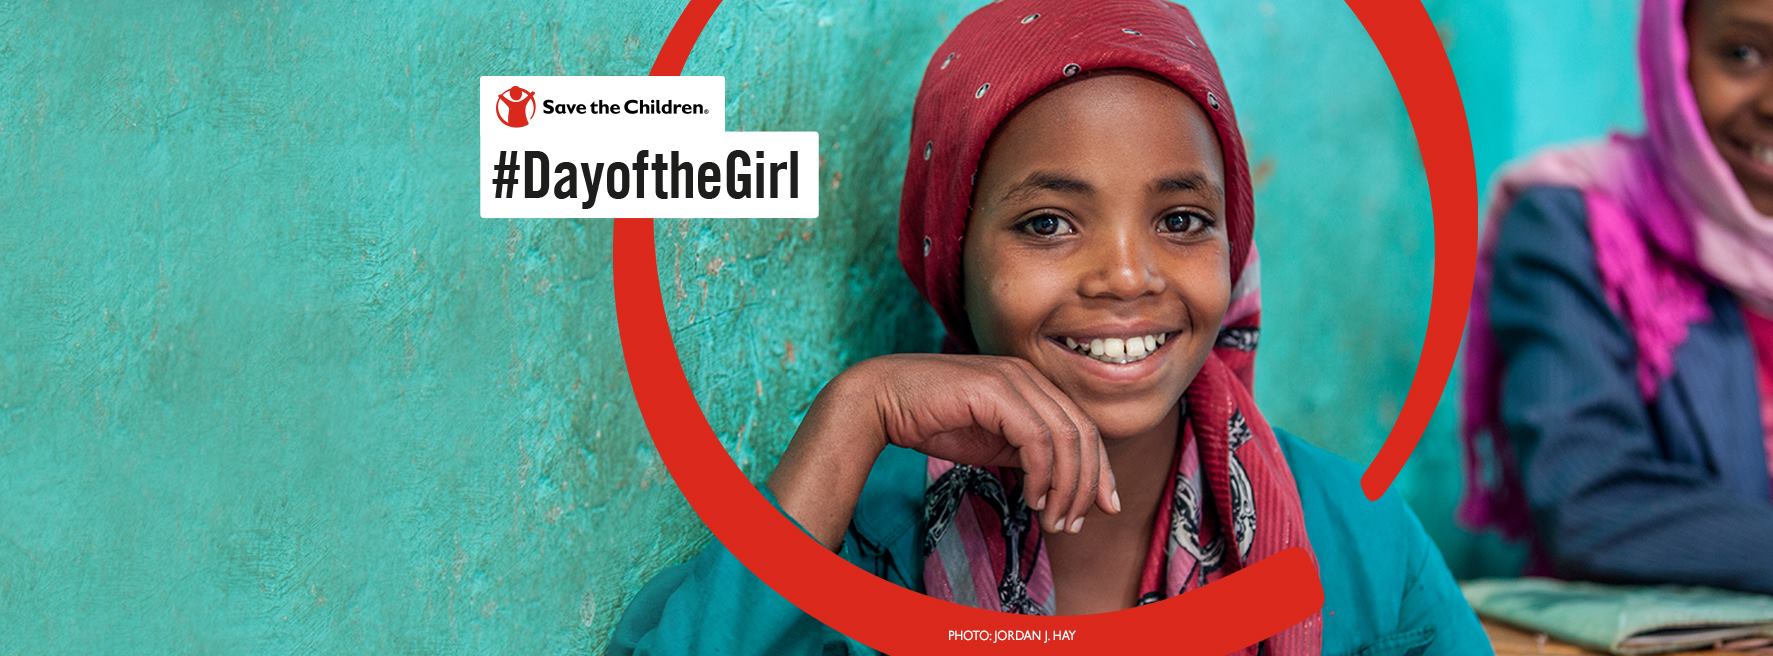 Međunarodni dan djevojčica: 700 milijuna djevojčica udane u djetinjstvu